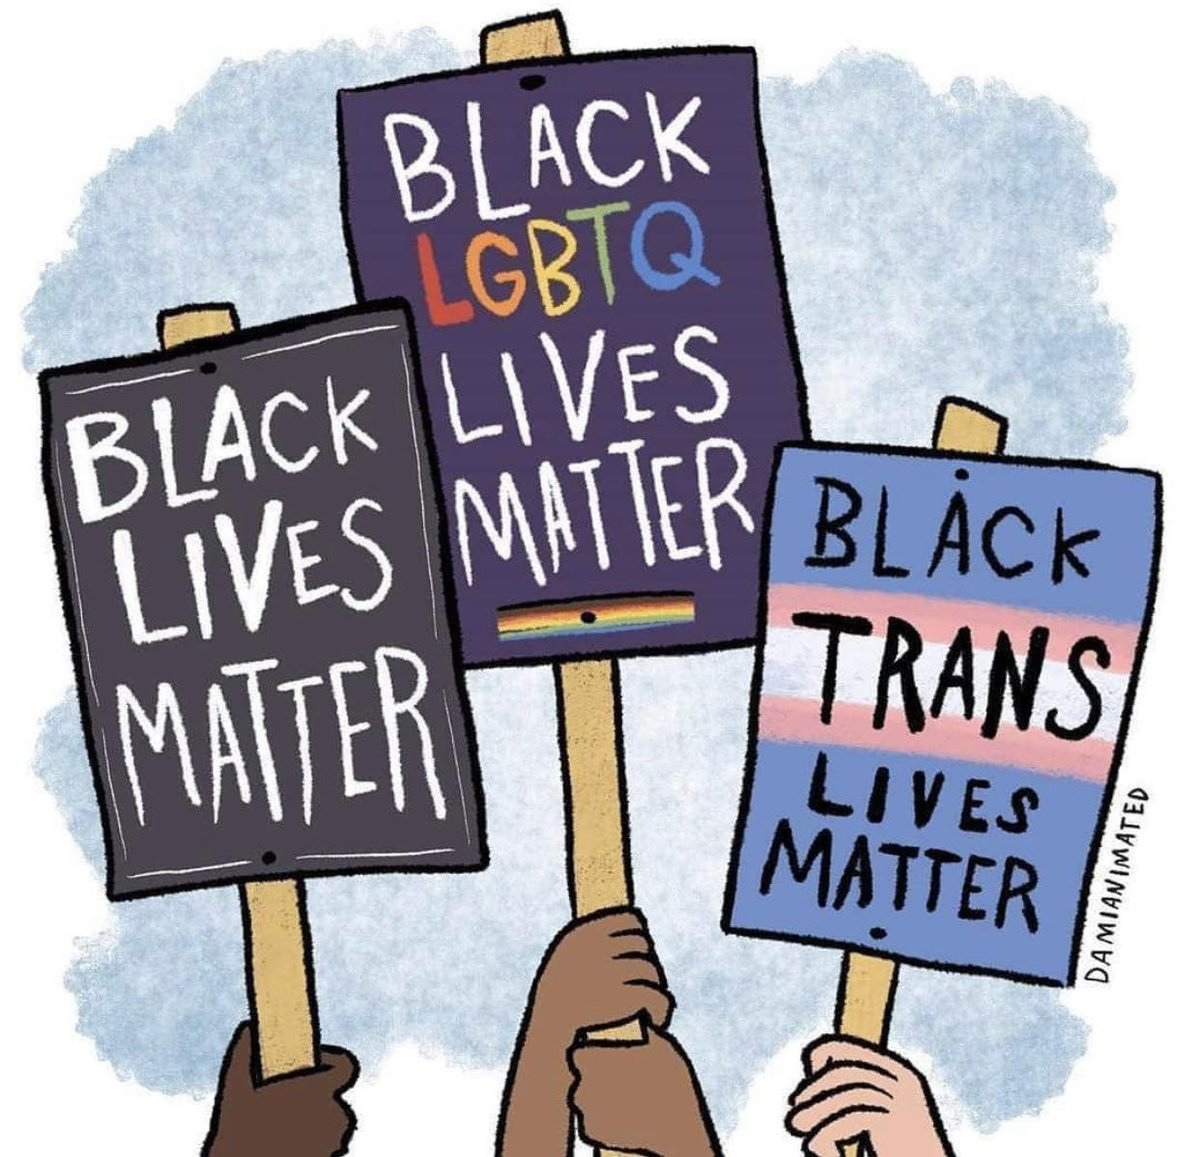 SAY IT WITH US! 

#BlackLivesMatter #BlackLGBTQLivesMatter #BlackTransLivesMatter

p.s. 1st #Pride was a RIOT!